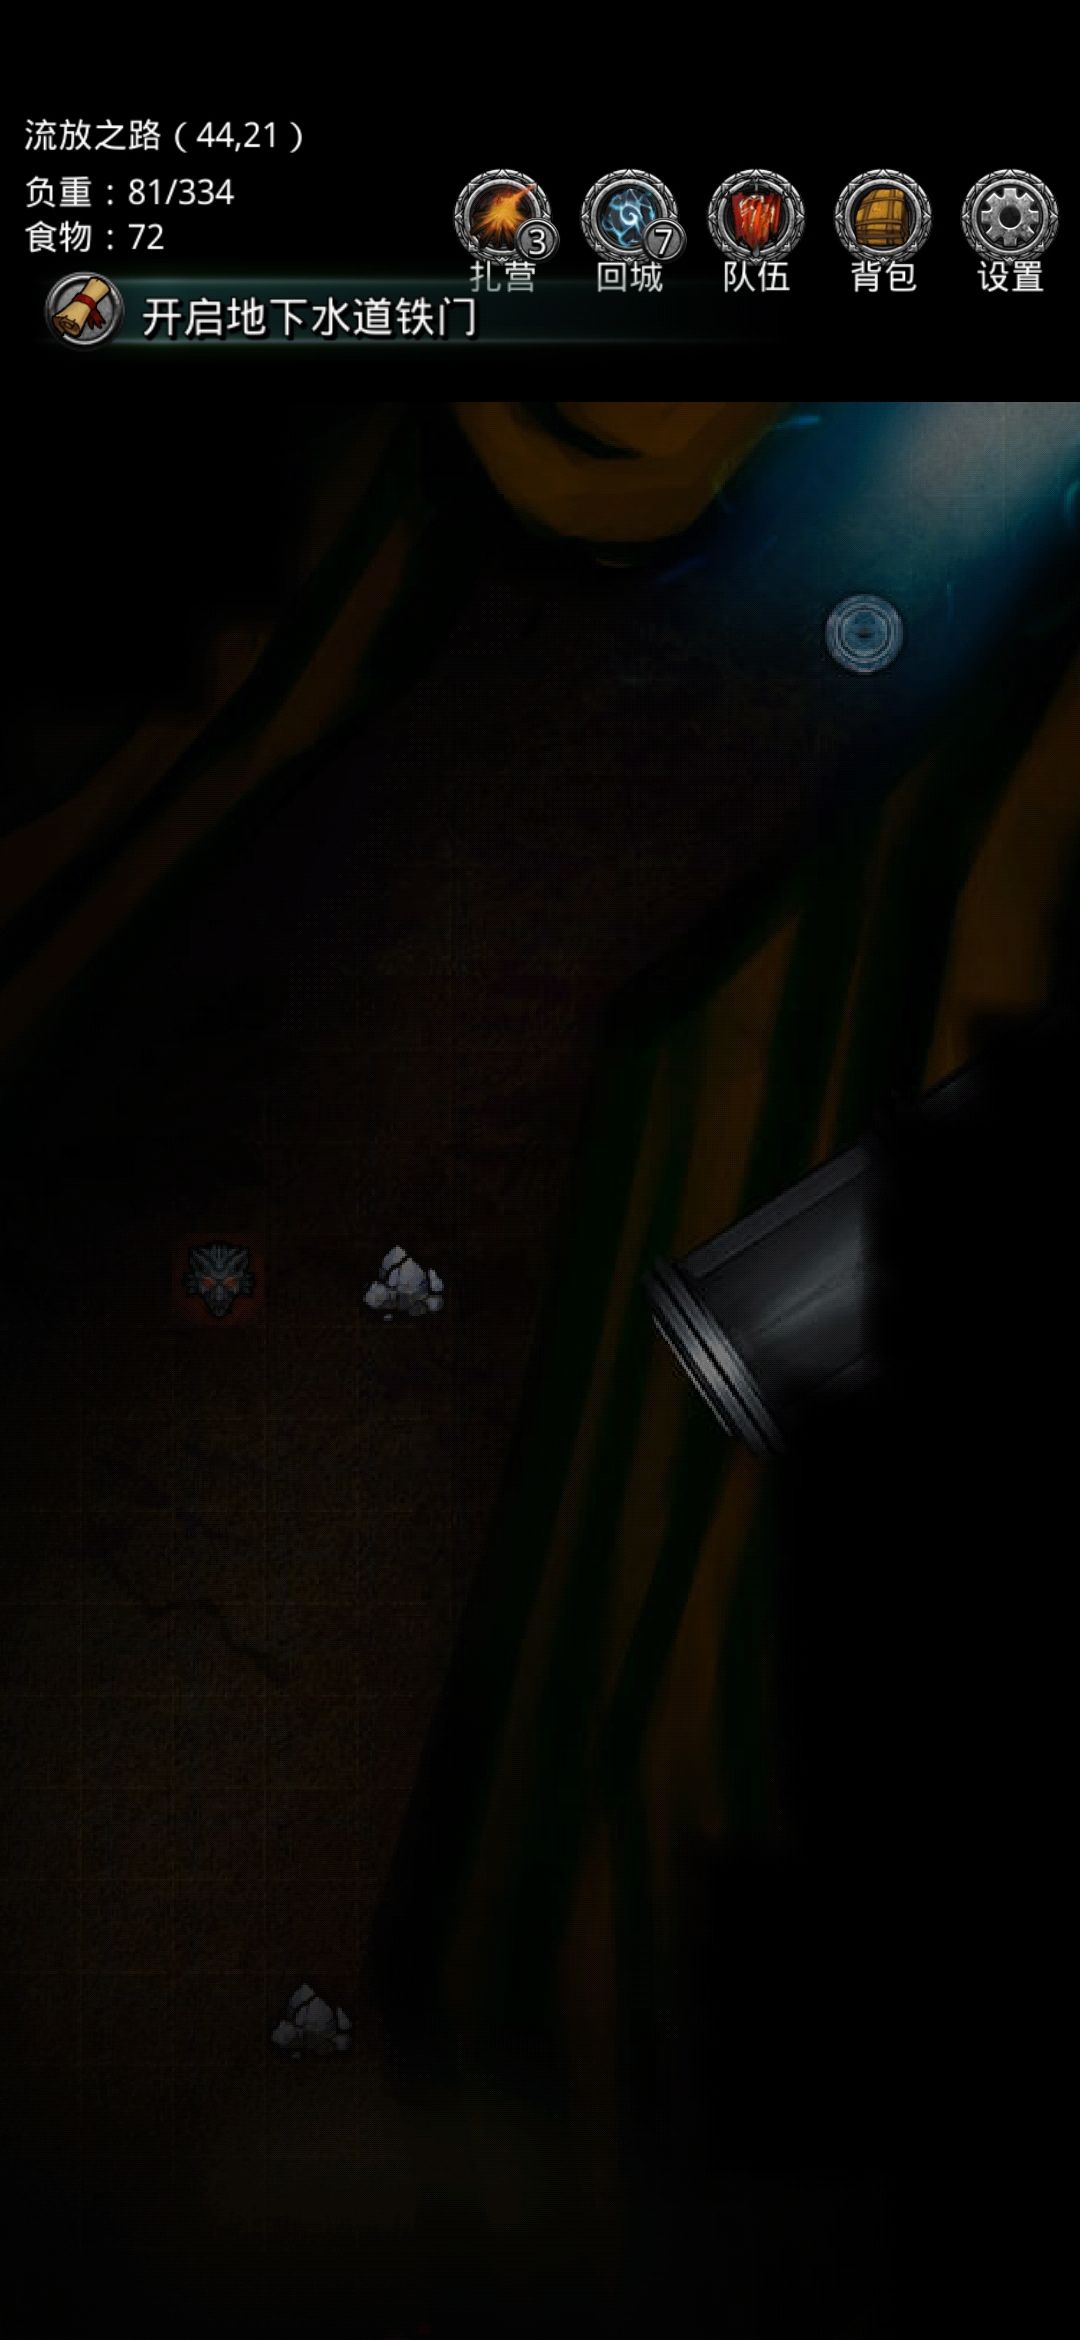 《地下城堡2》通关详解——图4流放之路